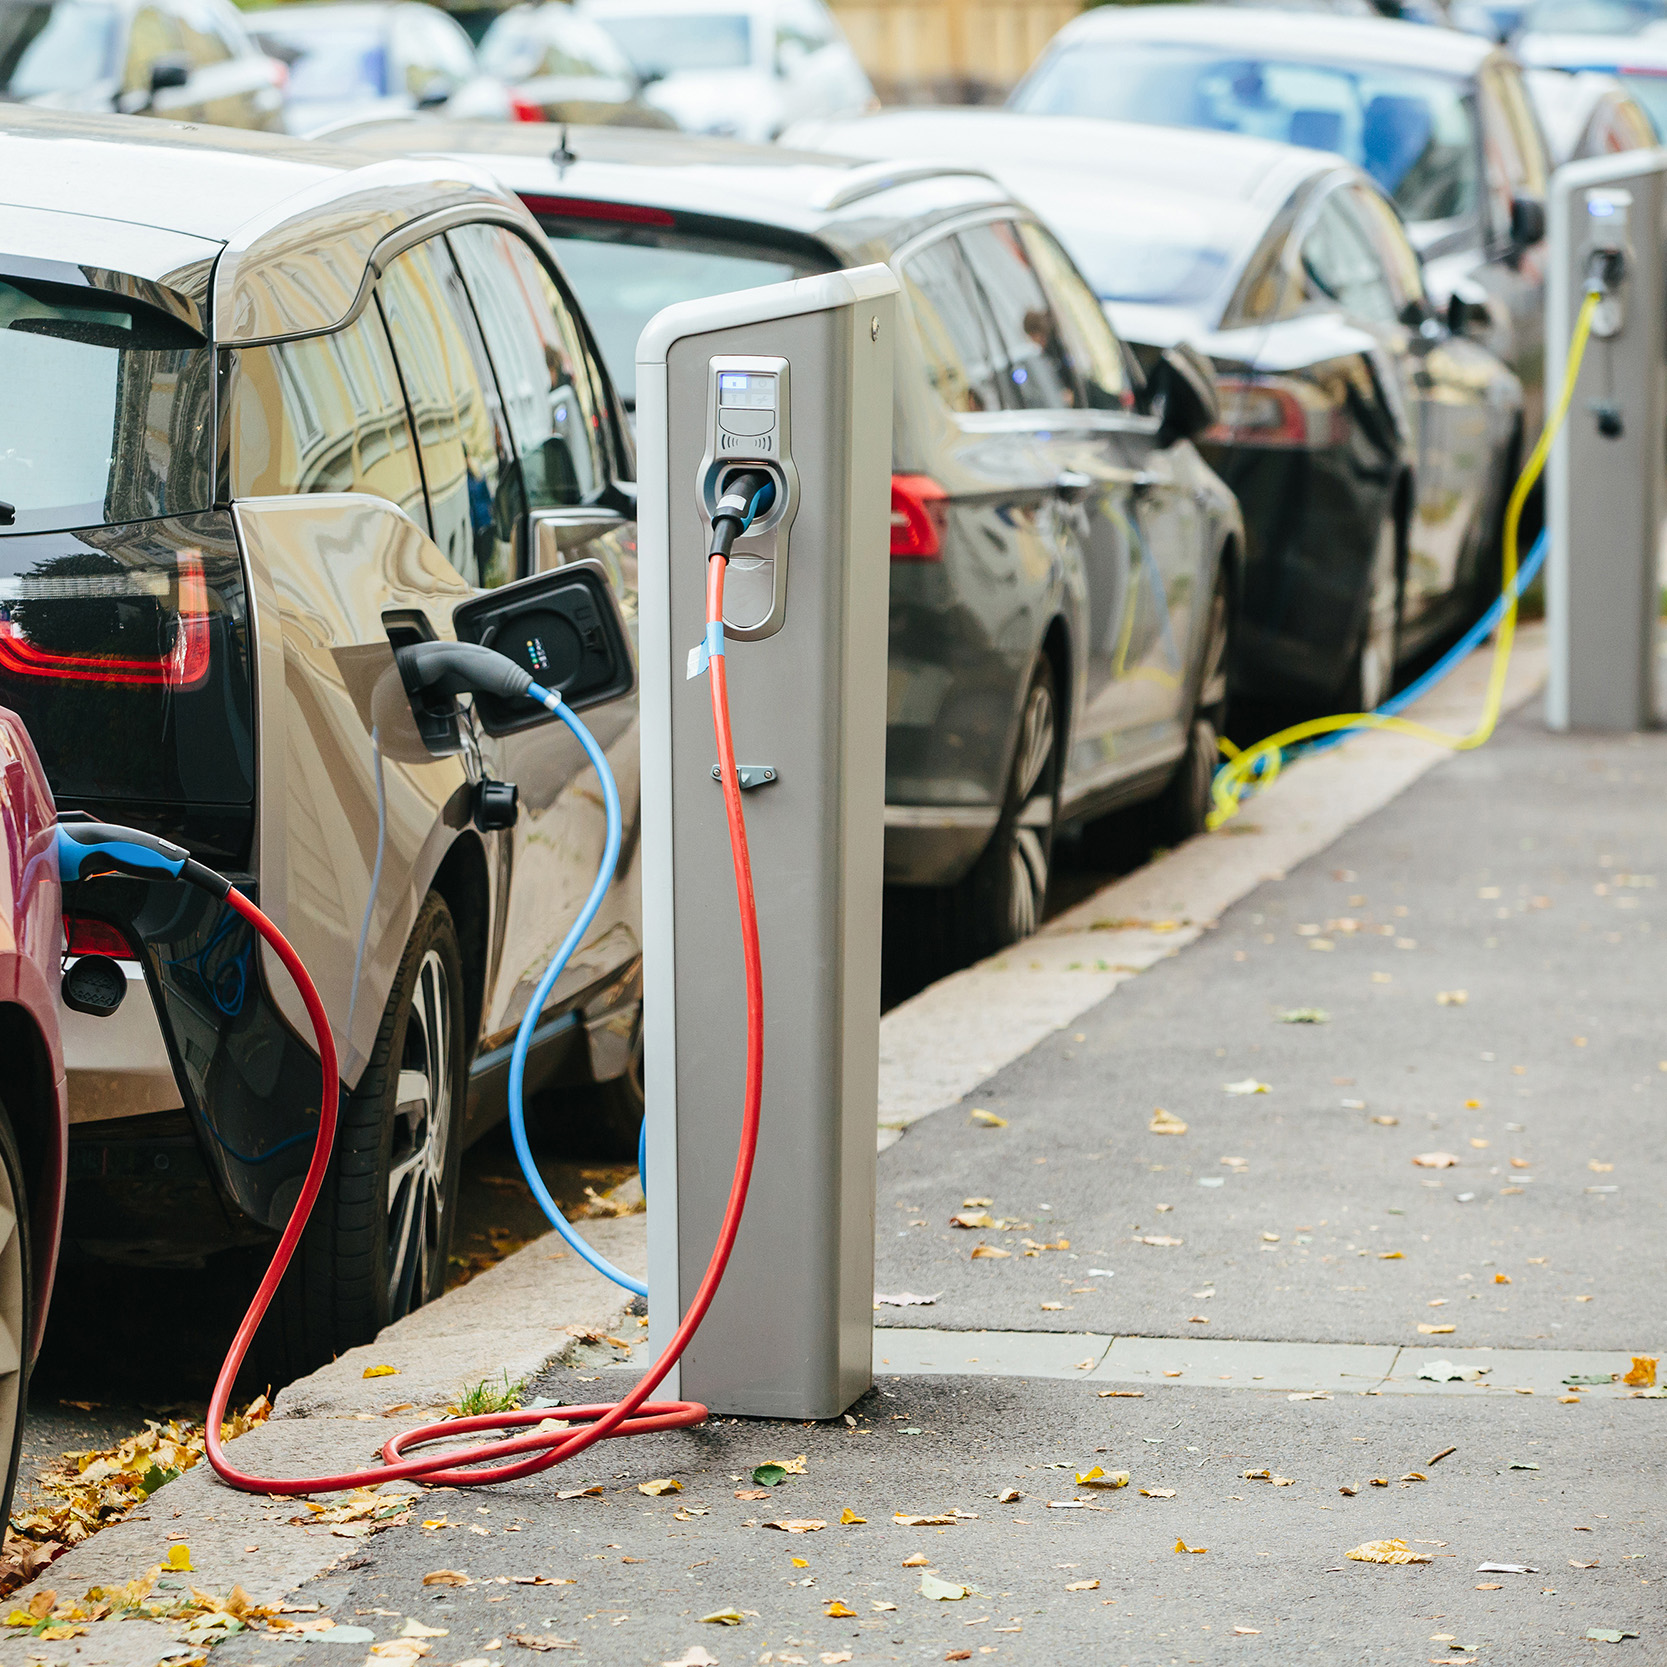 Des véhicules électriques sont rechargés au bord de la route, copyright: Shutterstock